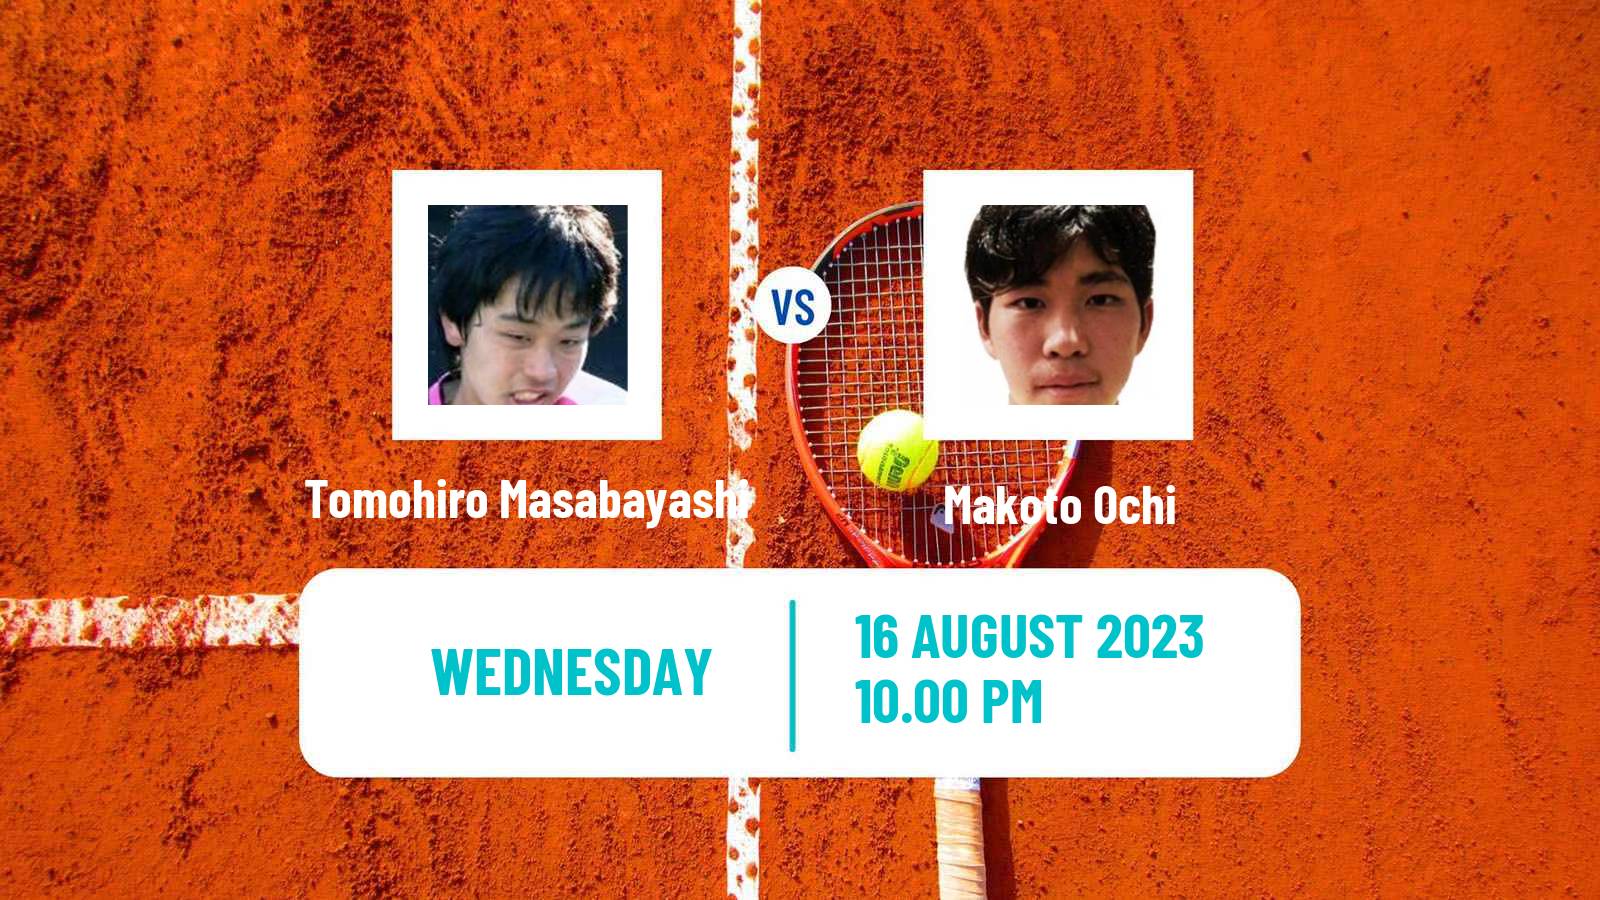 Tennis ITF M25 Tainan Men Tomohiro Masabayashi - Makoto Ochi